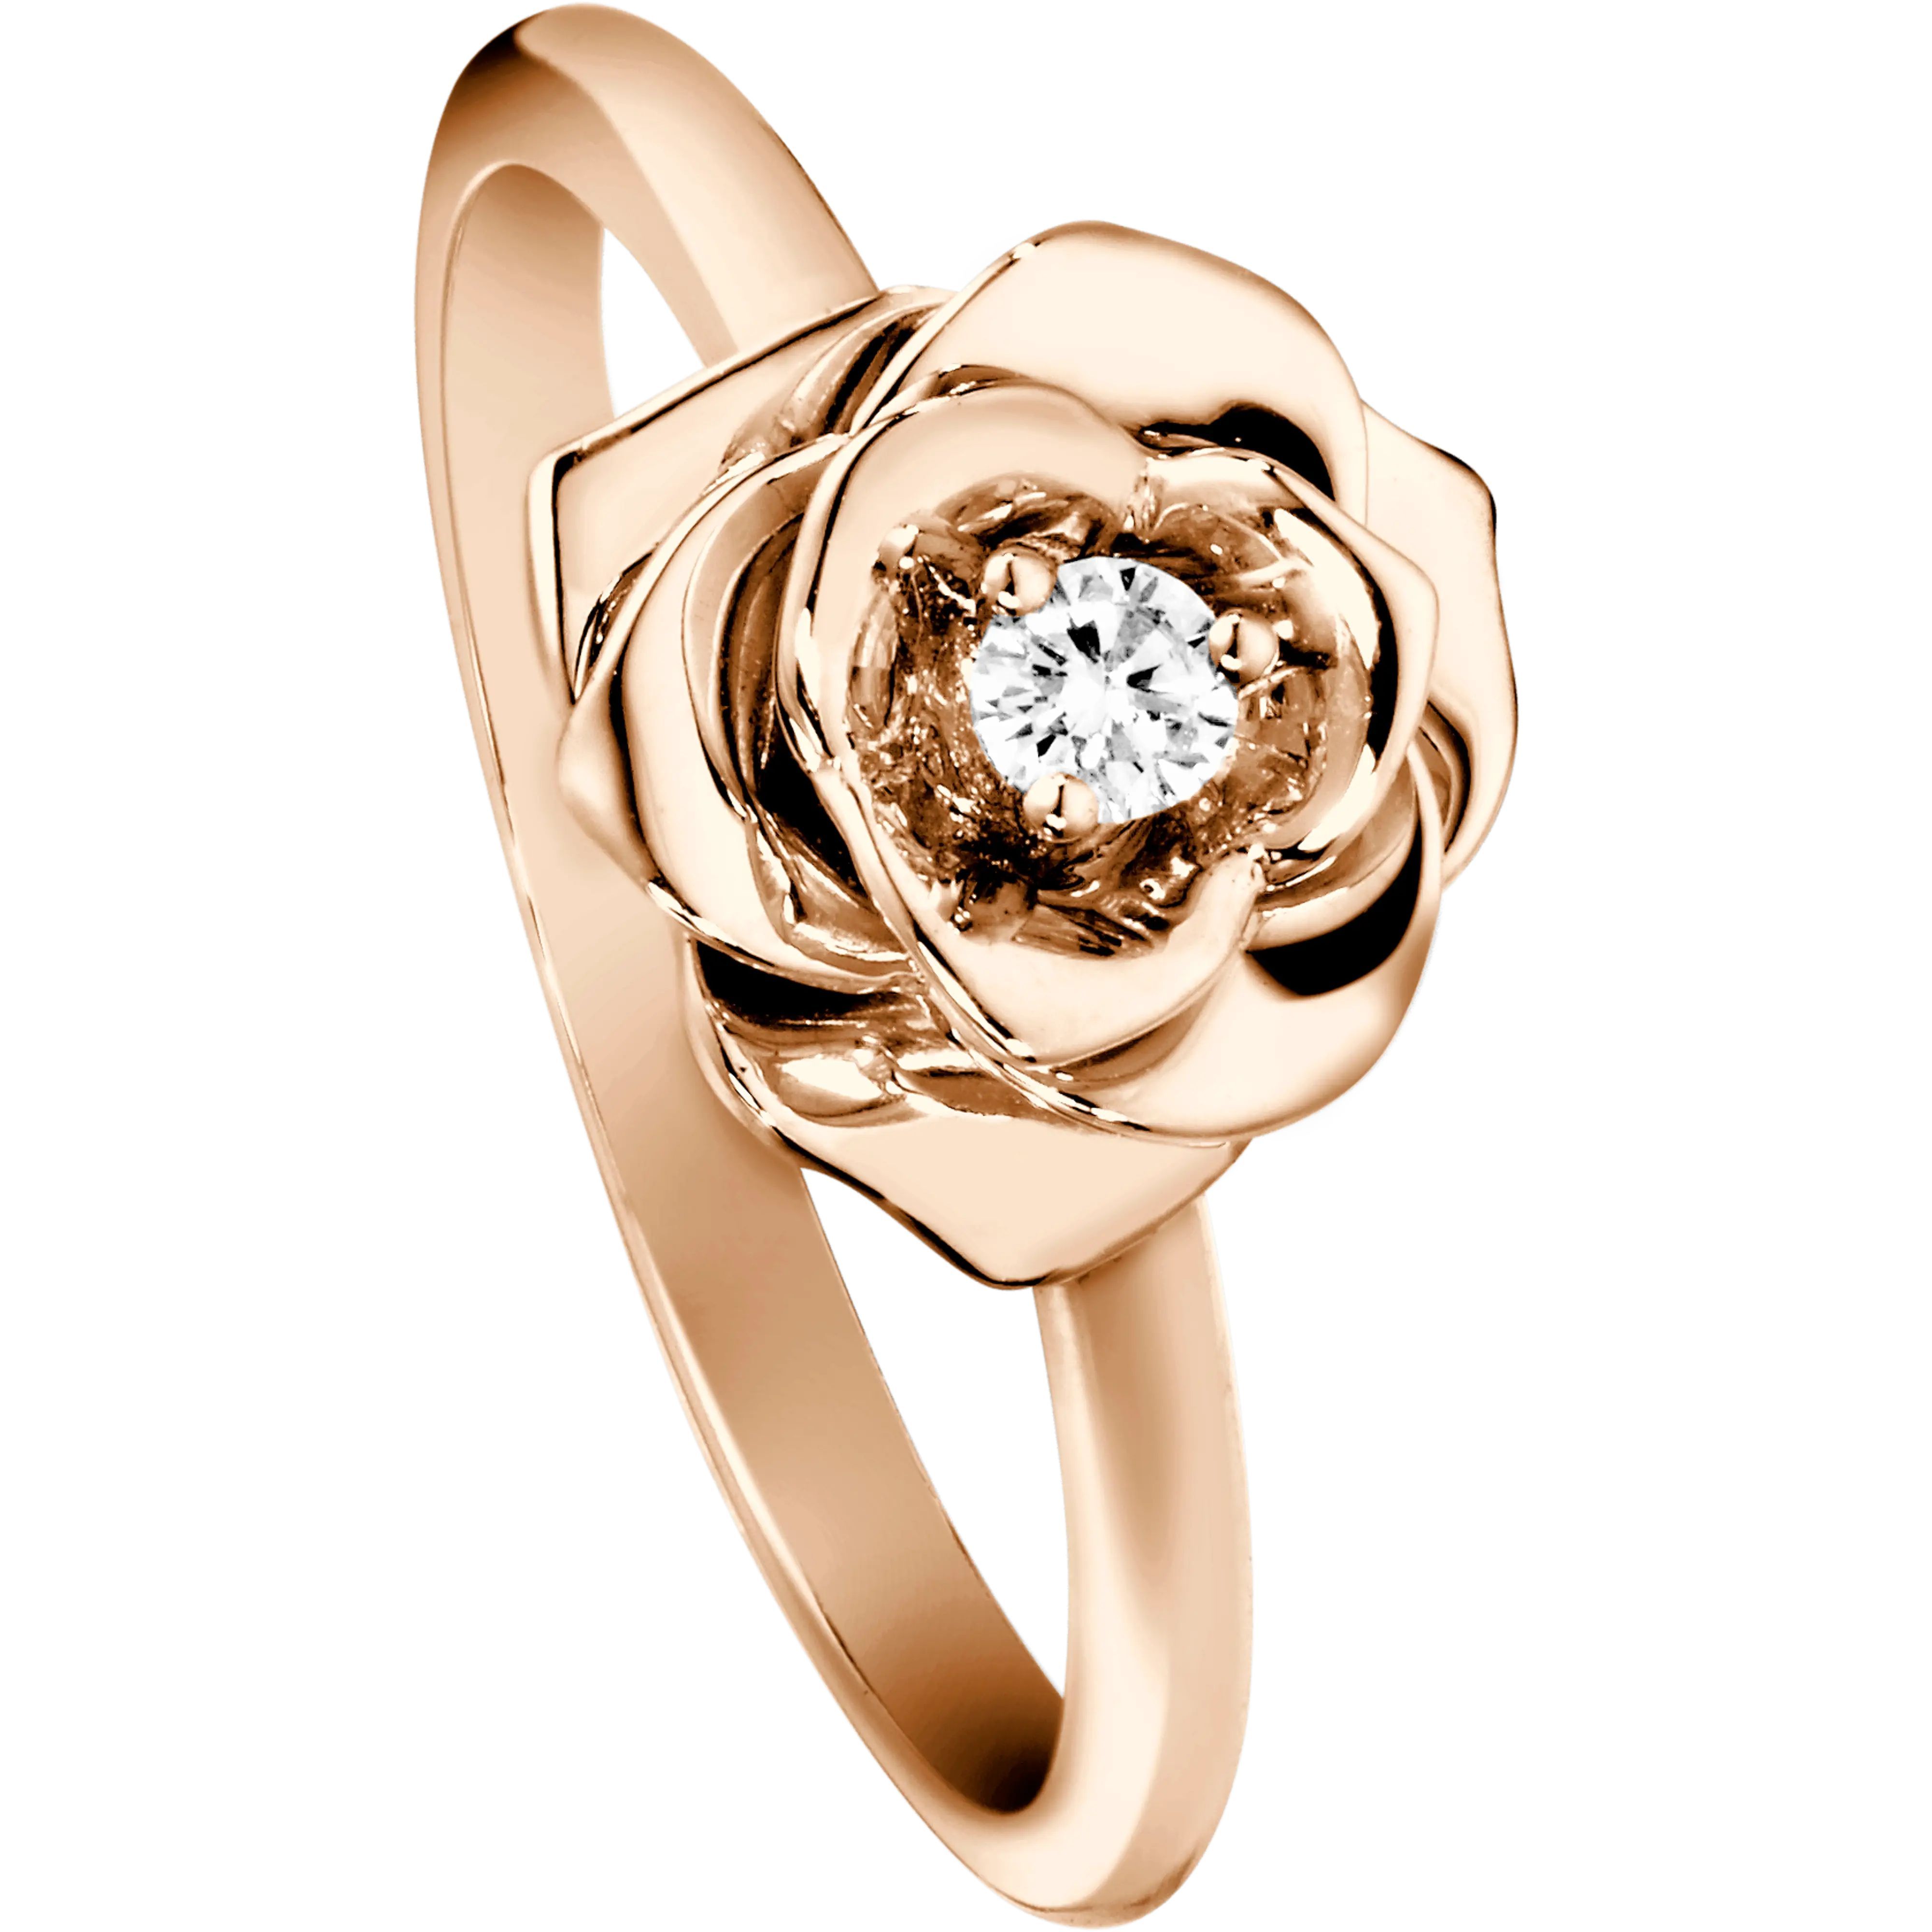 Изделия из золота с бриллиантами. Кольцо Piaget Rose. Пьяже ювелирные украшения. Piaget g34p7462 кольцо. Пьяже кольцо с бриллиантами.